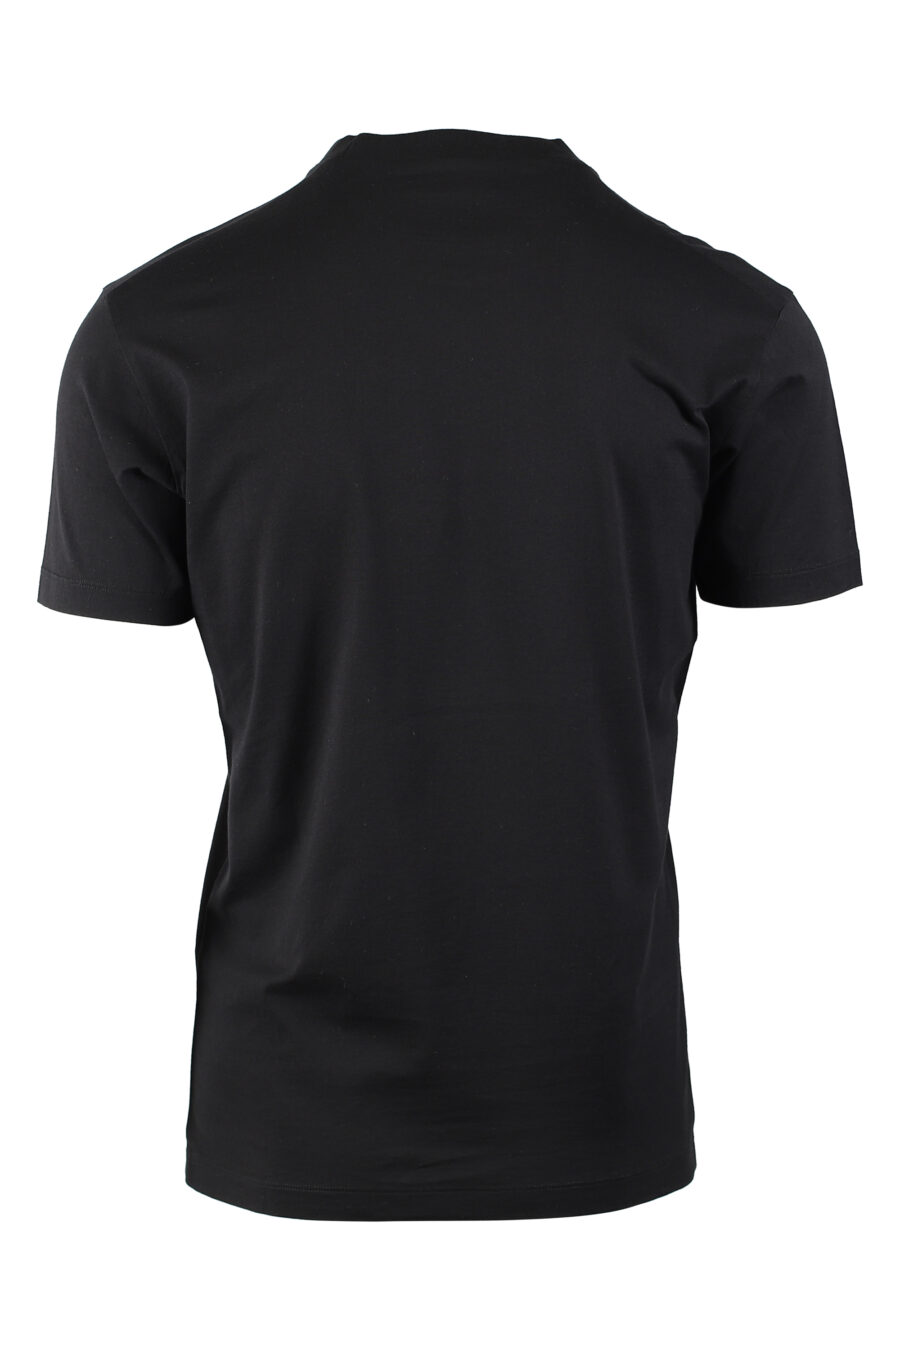 Camiseta negra con logo "icon" azul - IMG 0520